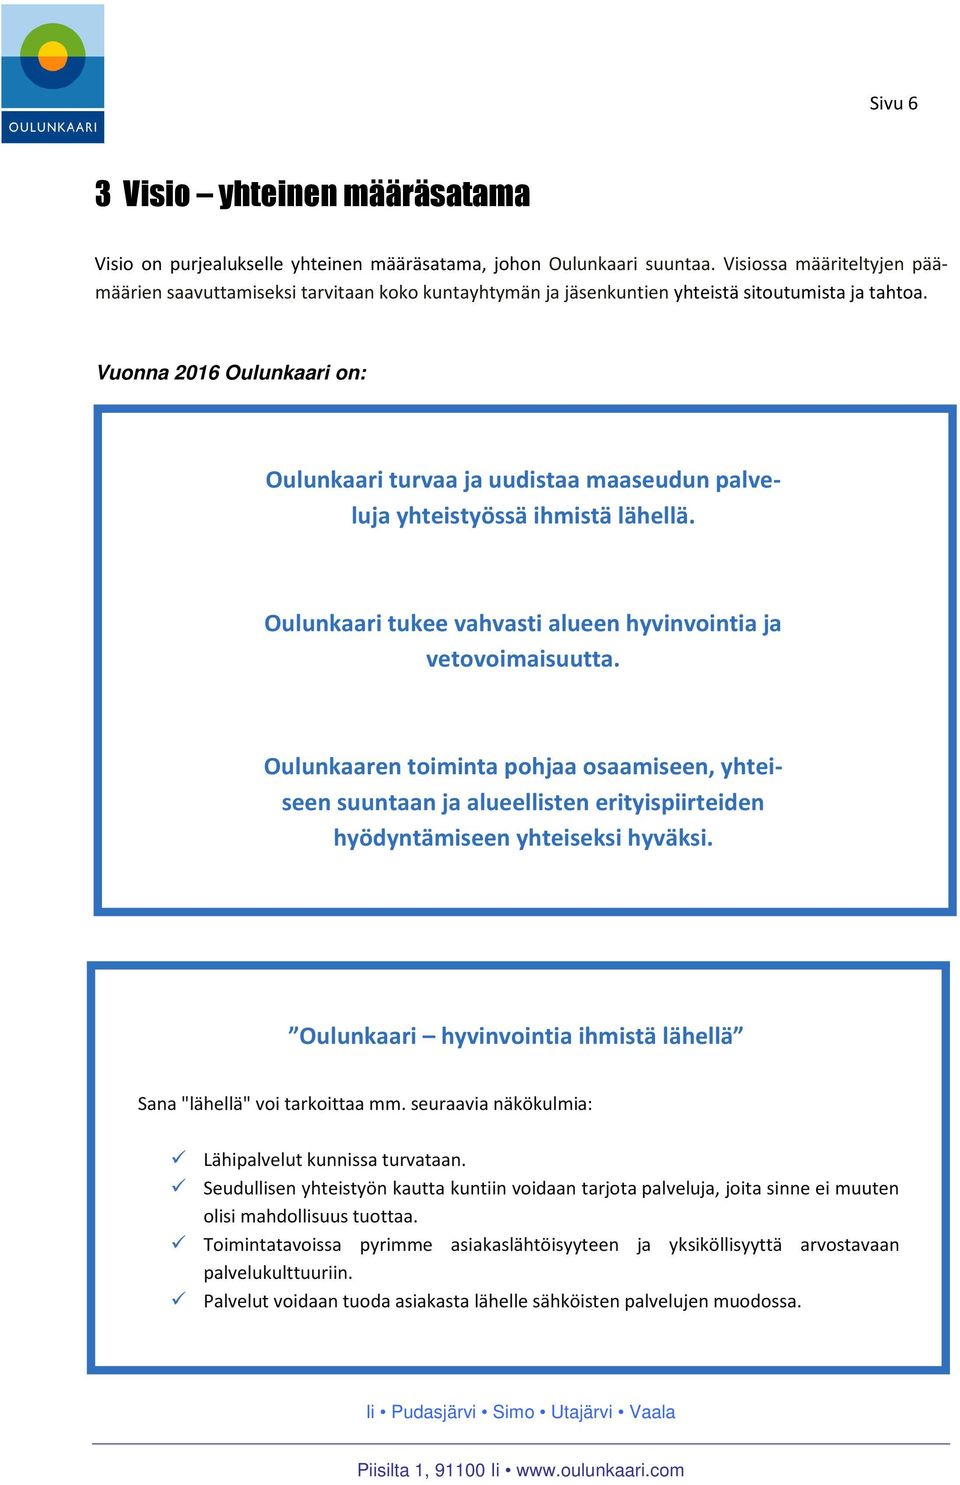 Vuonna 2016 Oulunkaari on: Oulunkaari turvaa ja uudistaa maaseudun palveluja yhteistyössä ihmistä lähellä. Oulunkaari tukee vahvasti alueen hyvinvointia ja vetovoimaisuutta.